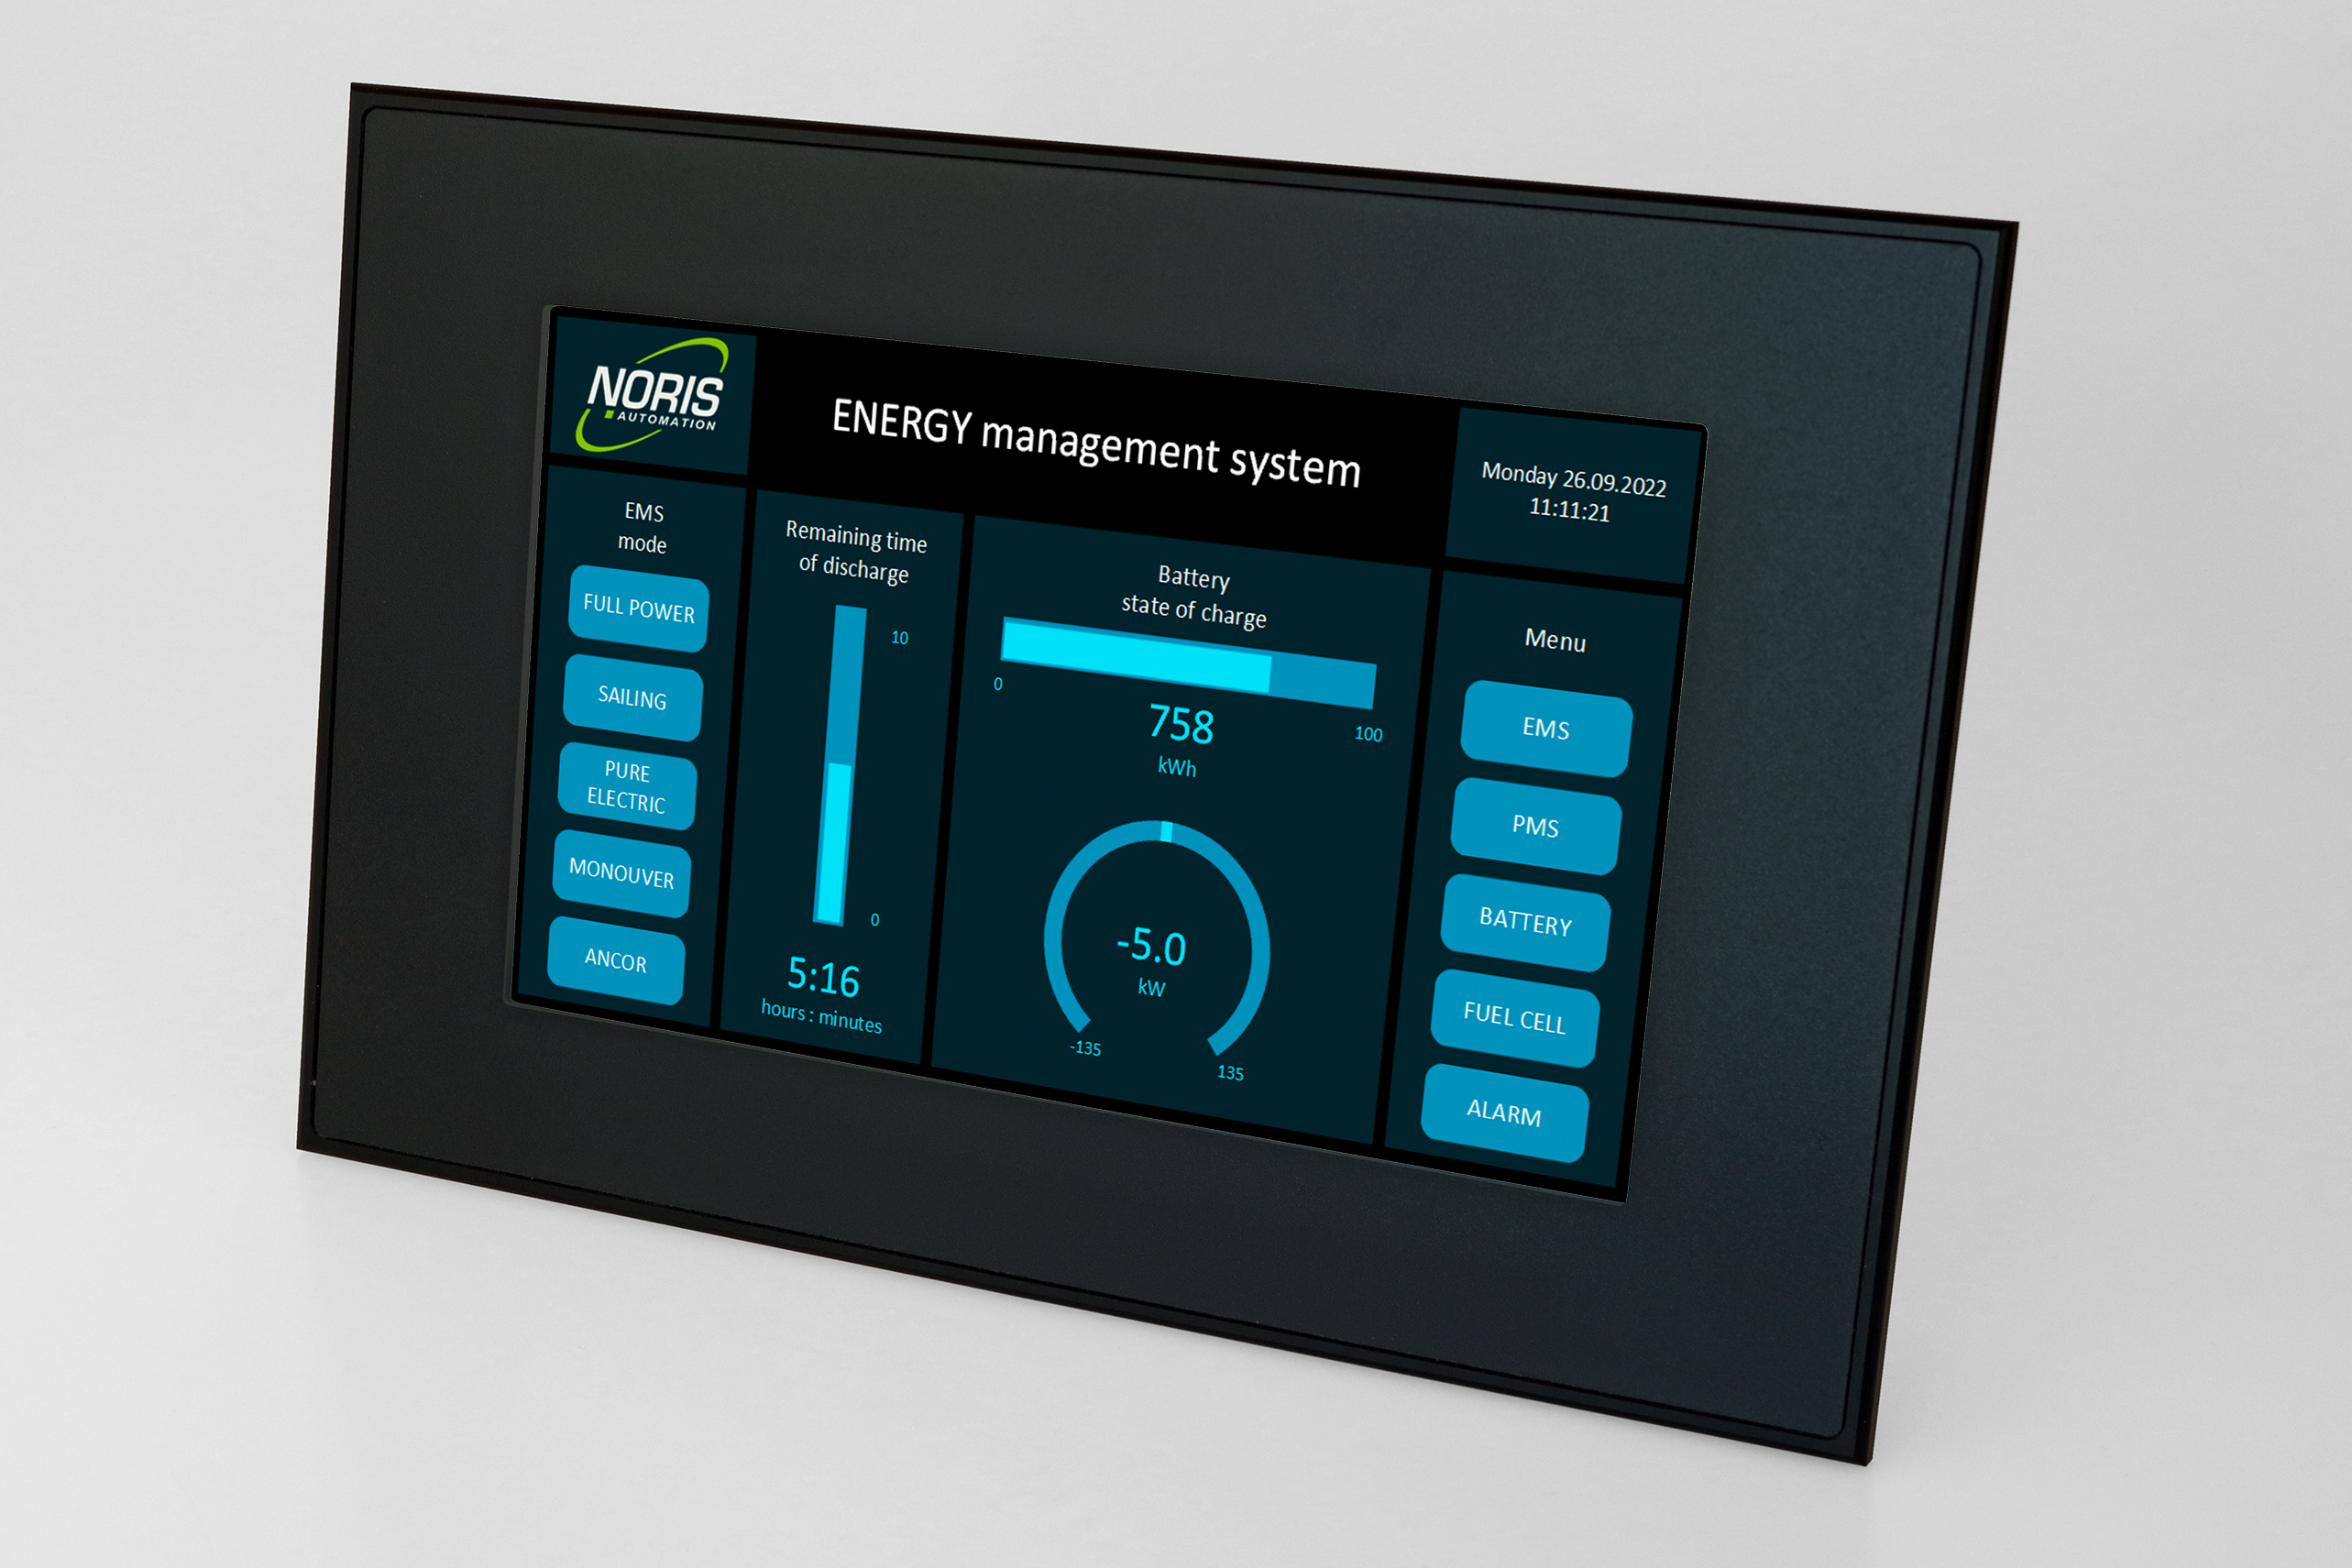 Das Bild zeigt ein Touchscreen Display mit einer Energiemanagement Visualisierung